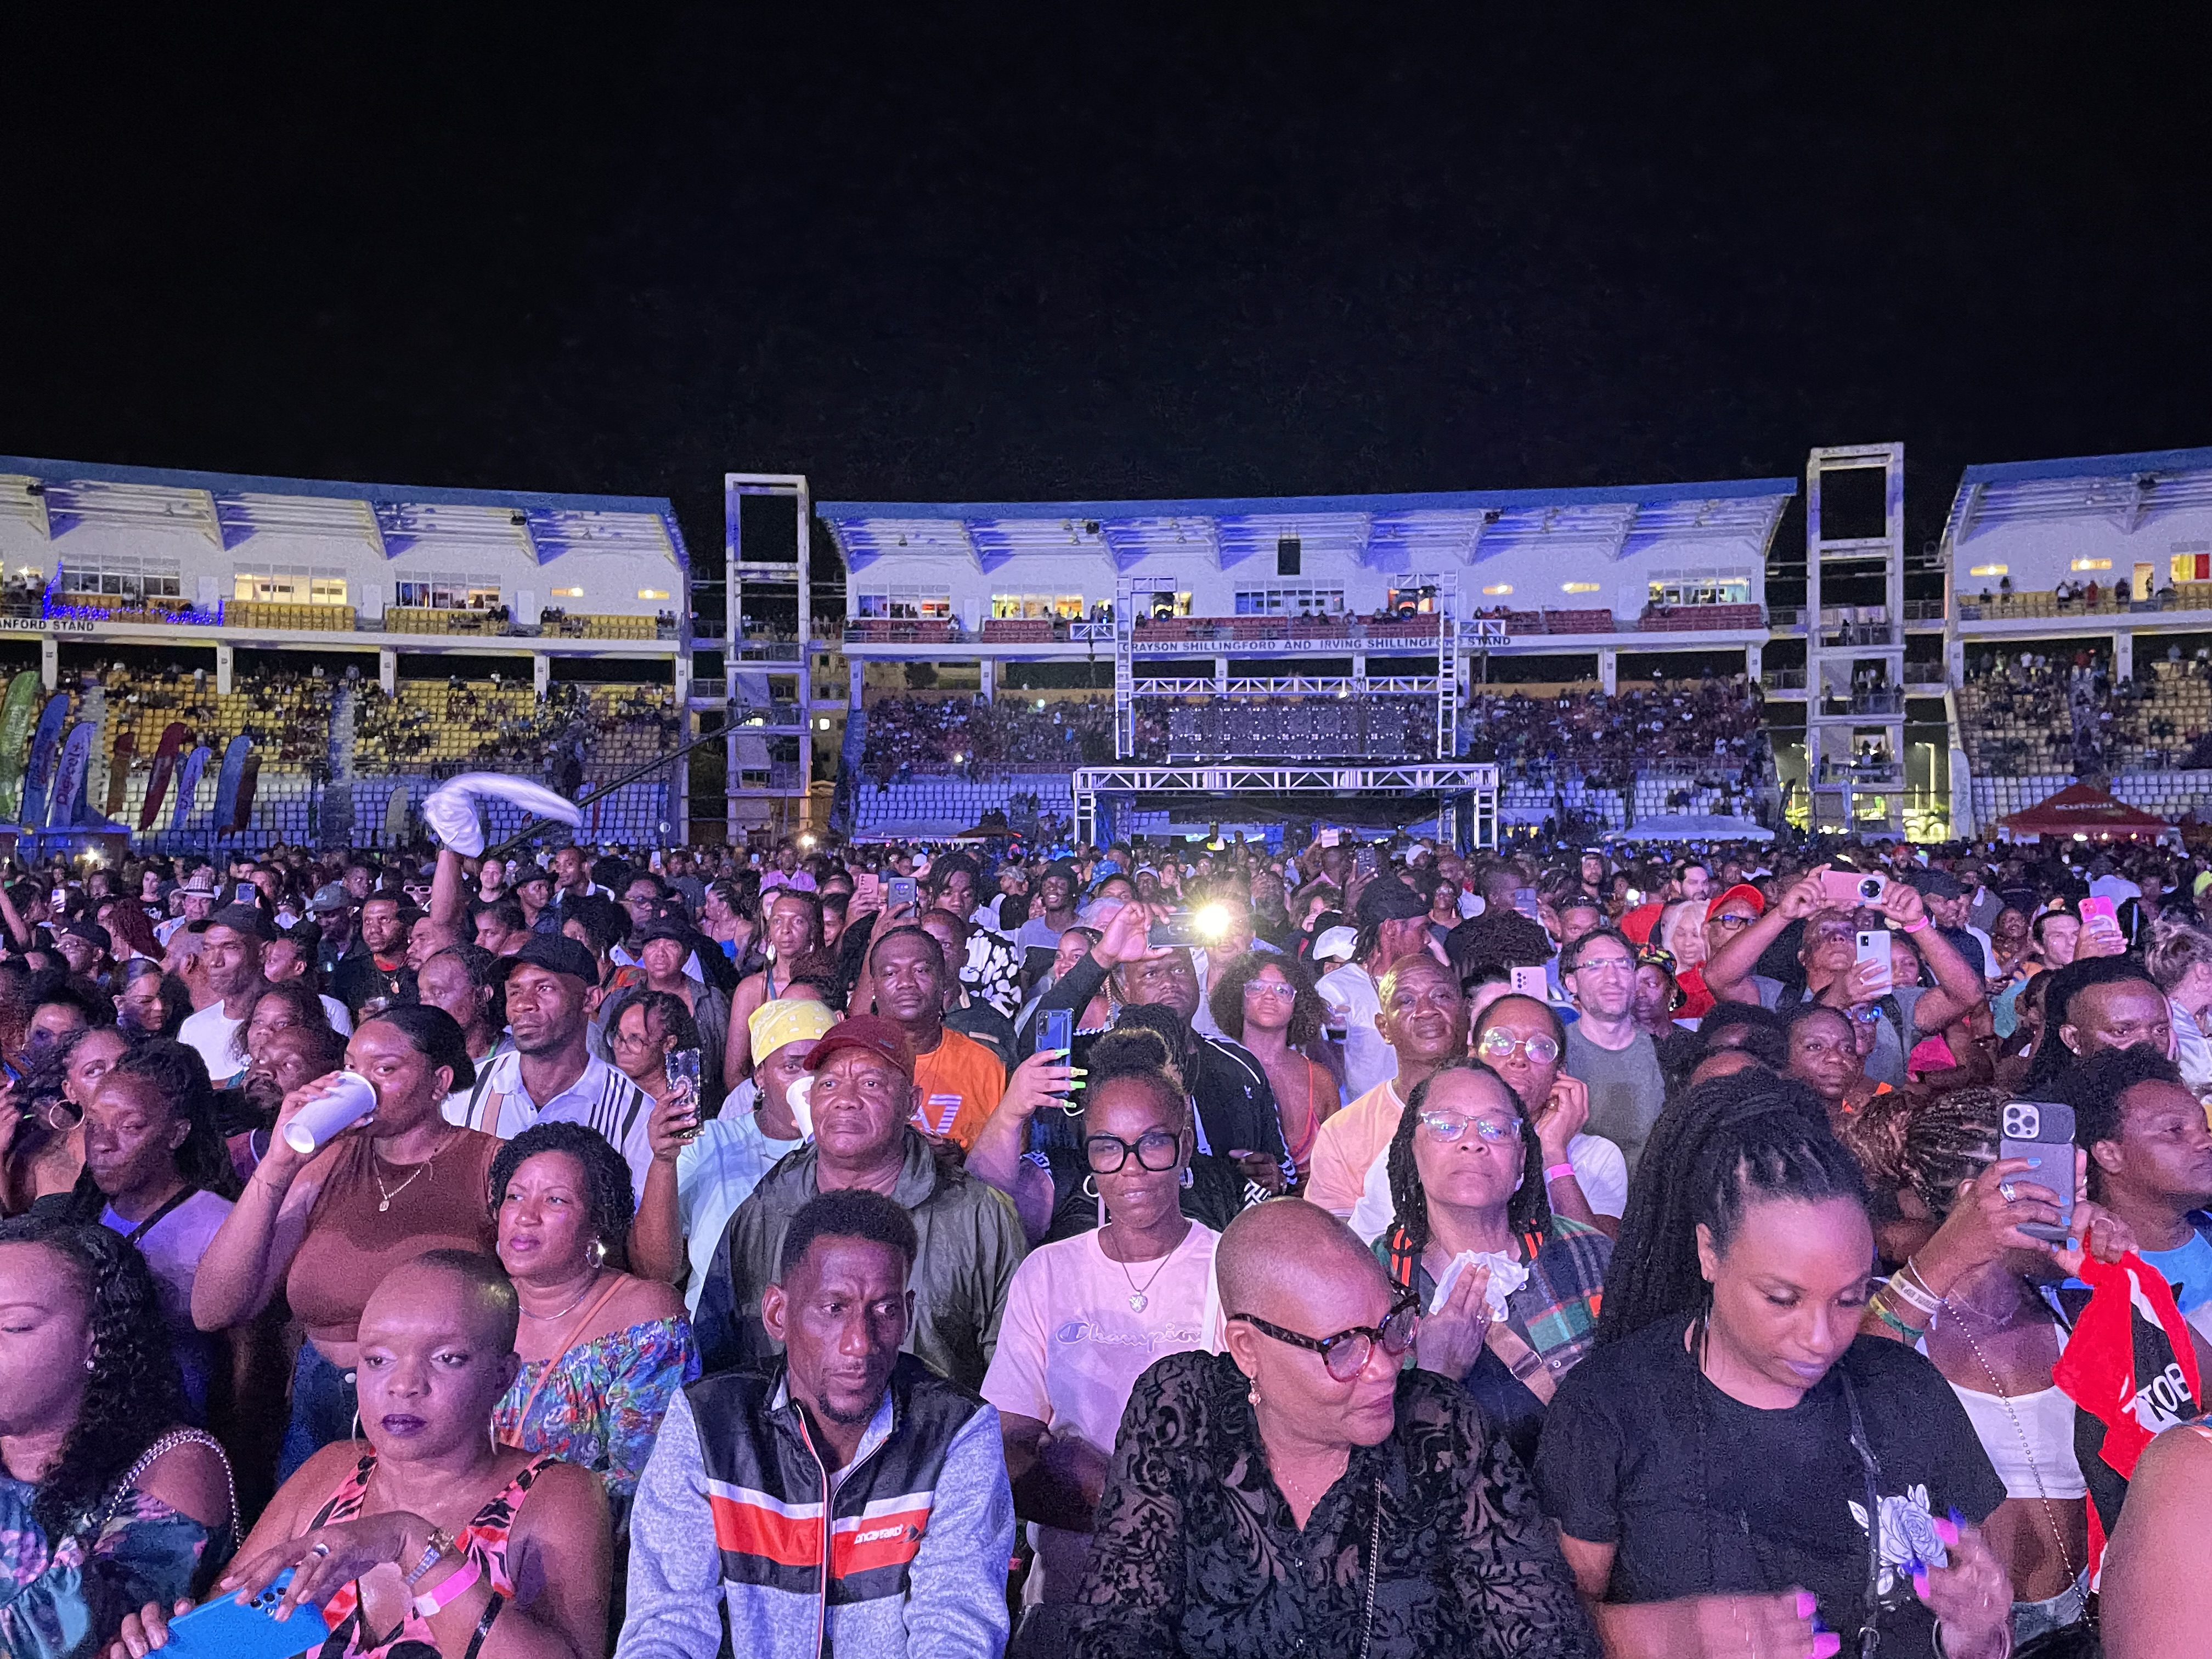     Dominica Festival : un événement très apprécié des Guadeloupéens et Martiniquais

